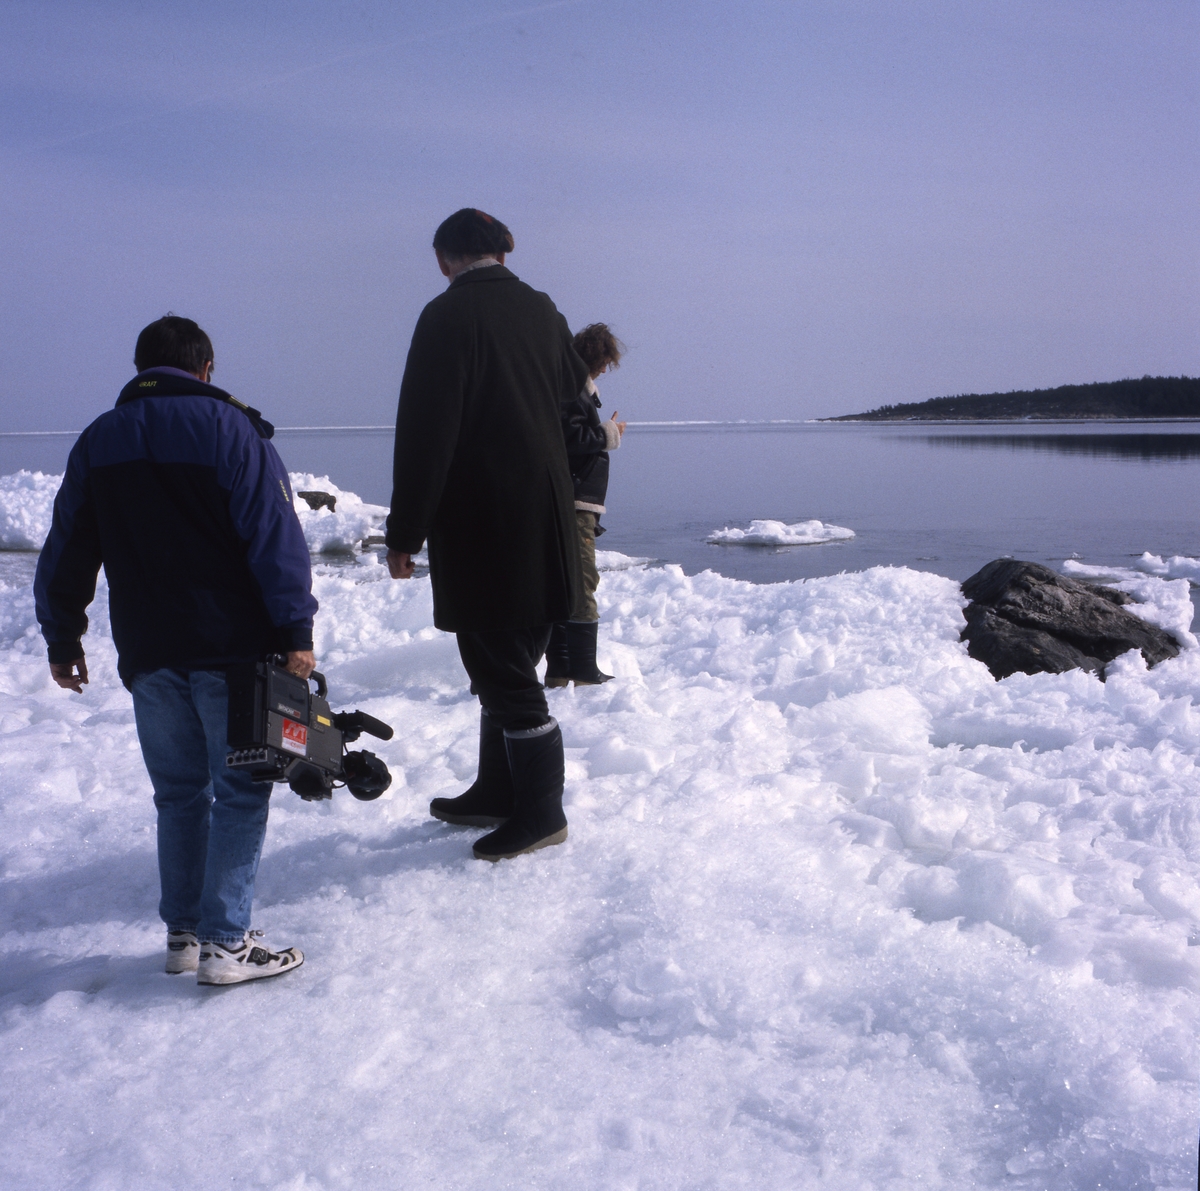 Inspelning av TV-programmet "Mitt i naturen" på Lörudden, Njurunda 15 april 1996. Programmet handlade om naturen i Sverige och världen och startade 1980.